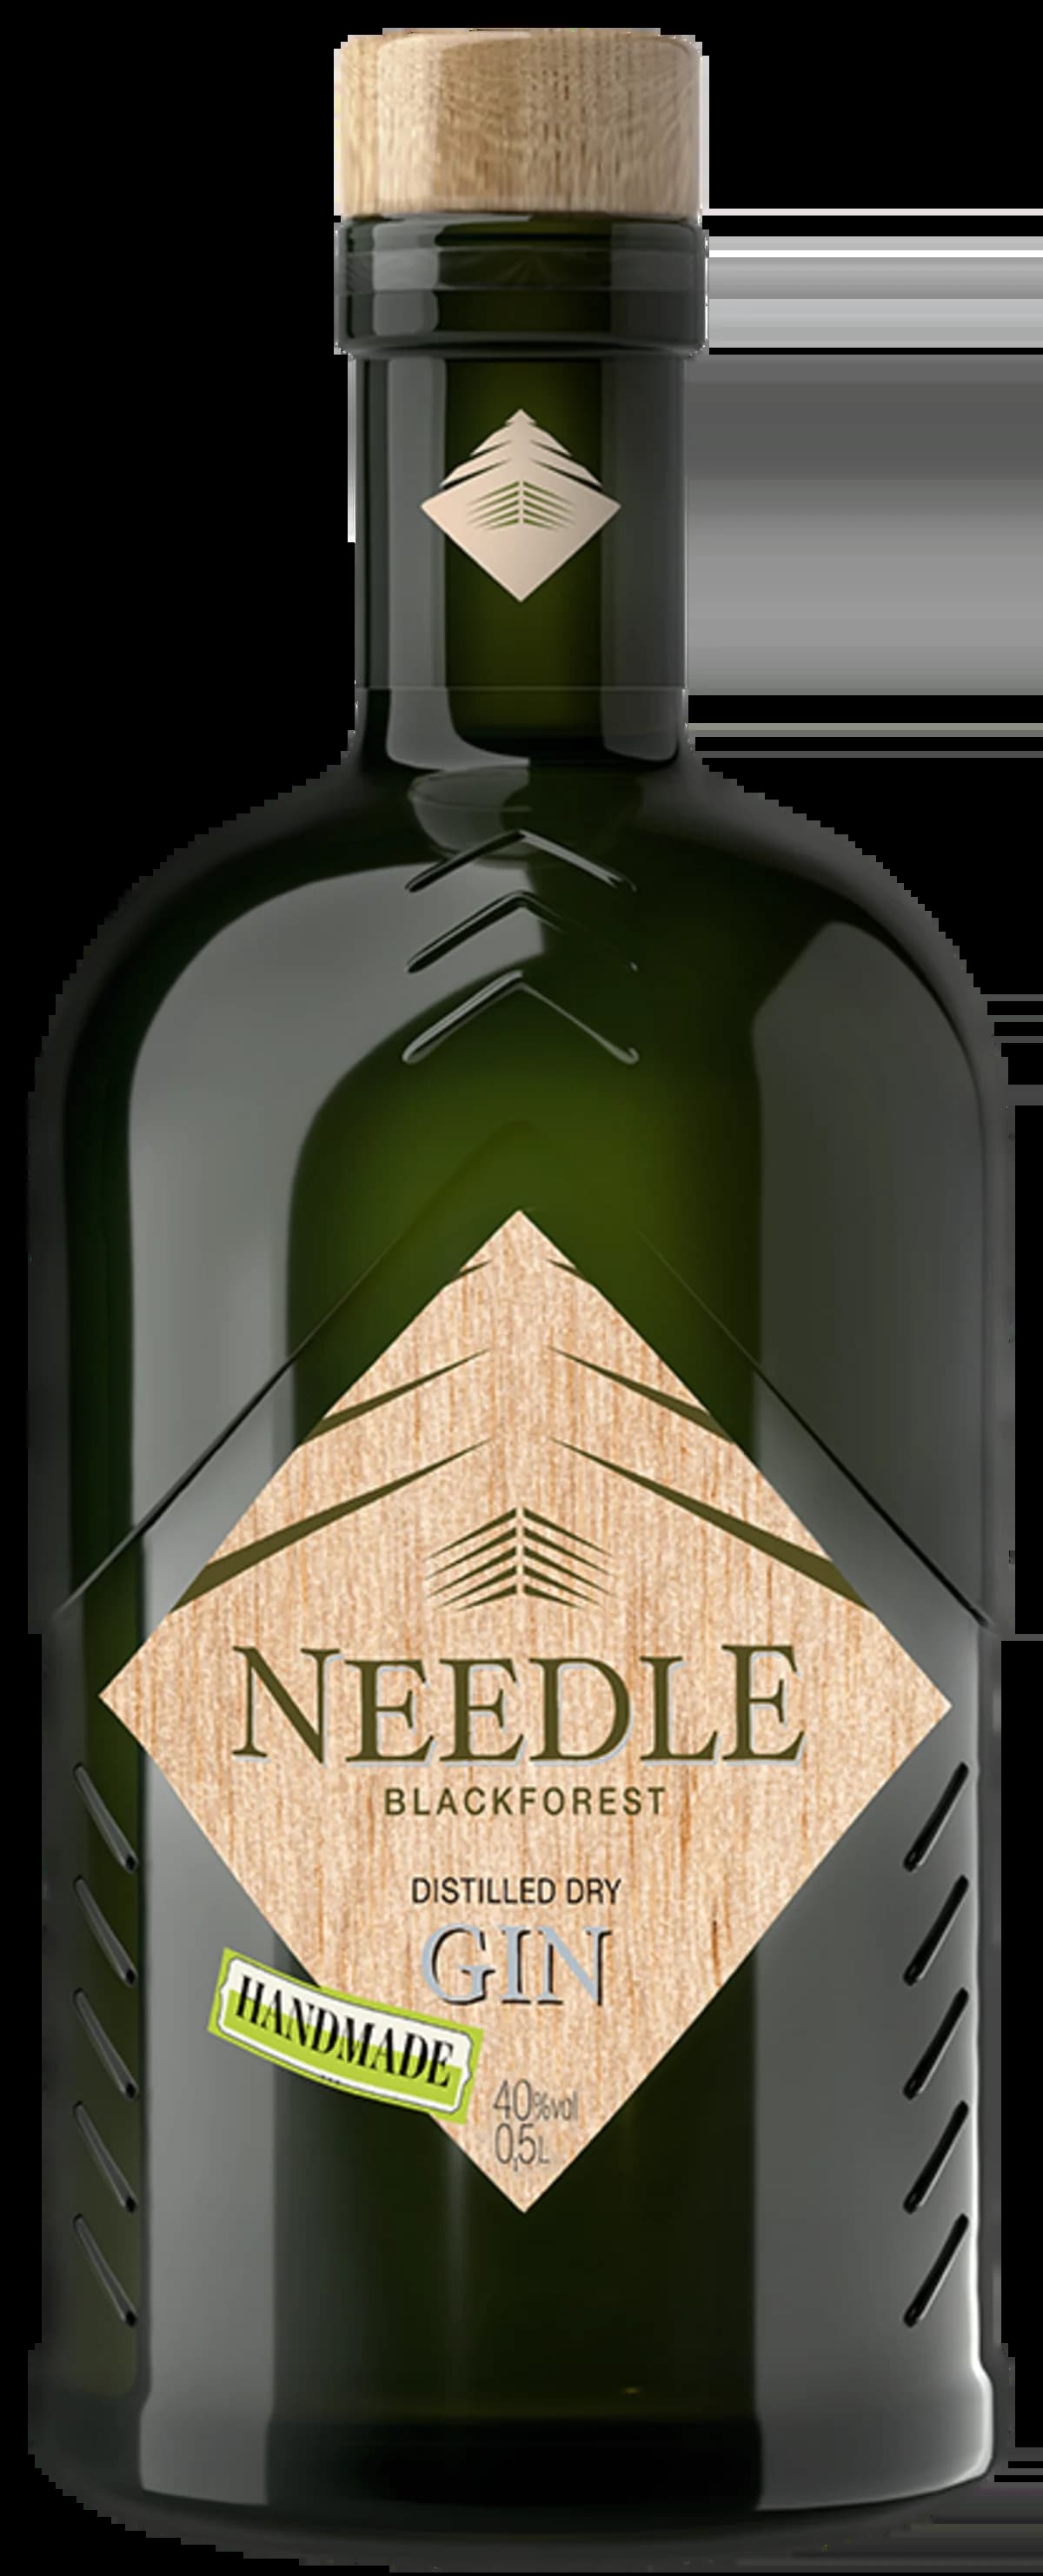 Abbildung einer Gin Flasche Needle Black Forest Distilled Dry Gin